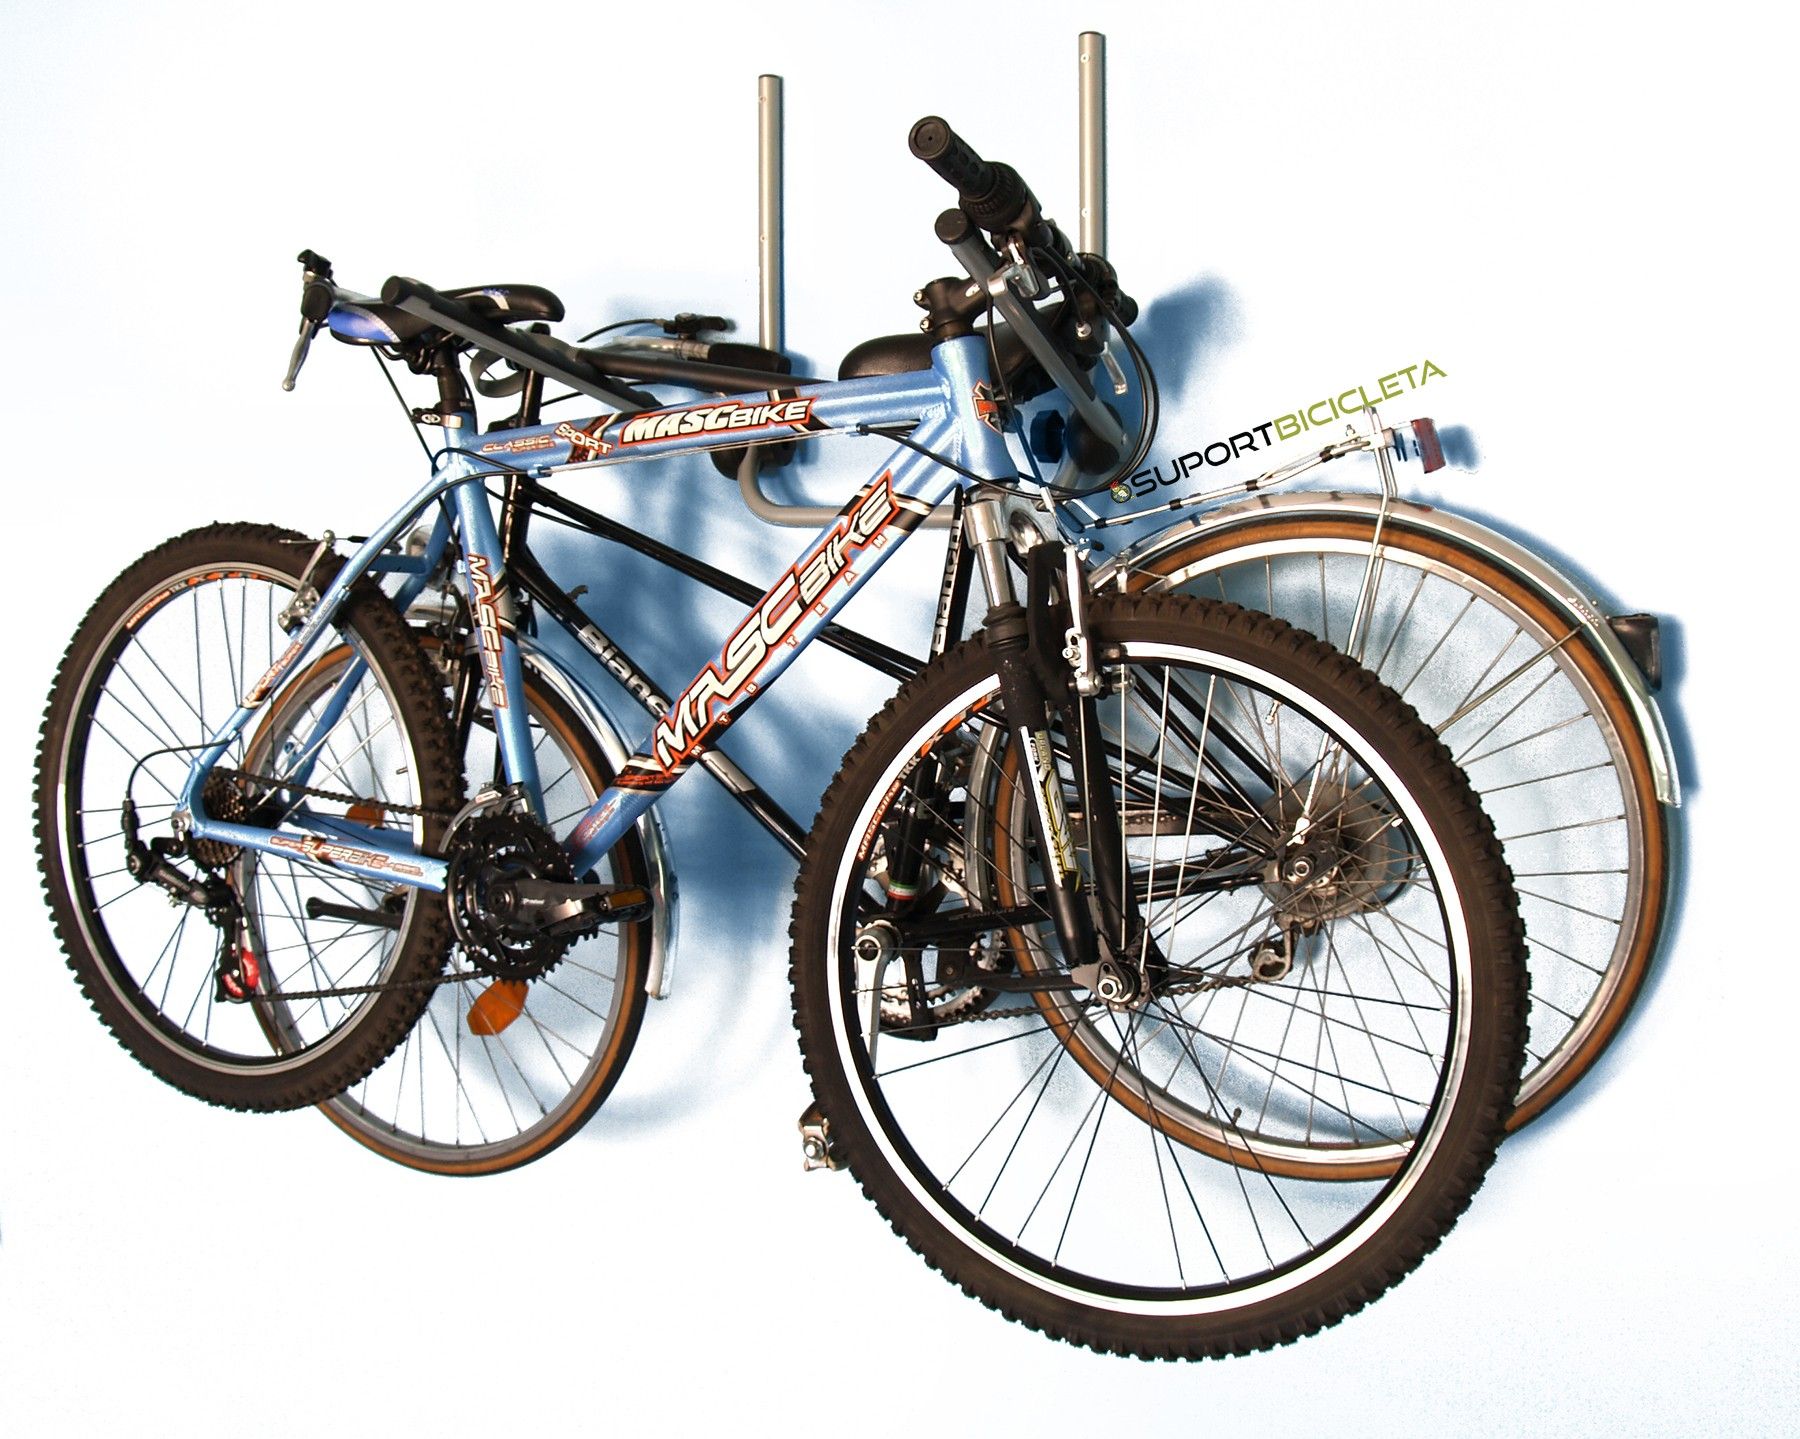 Suport biciclete Menabo Wally pentru depozitare cu prindere pe perete